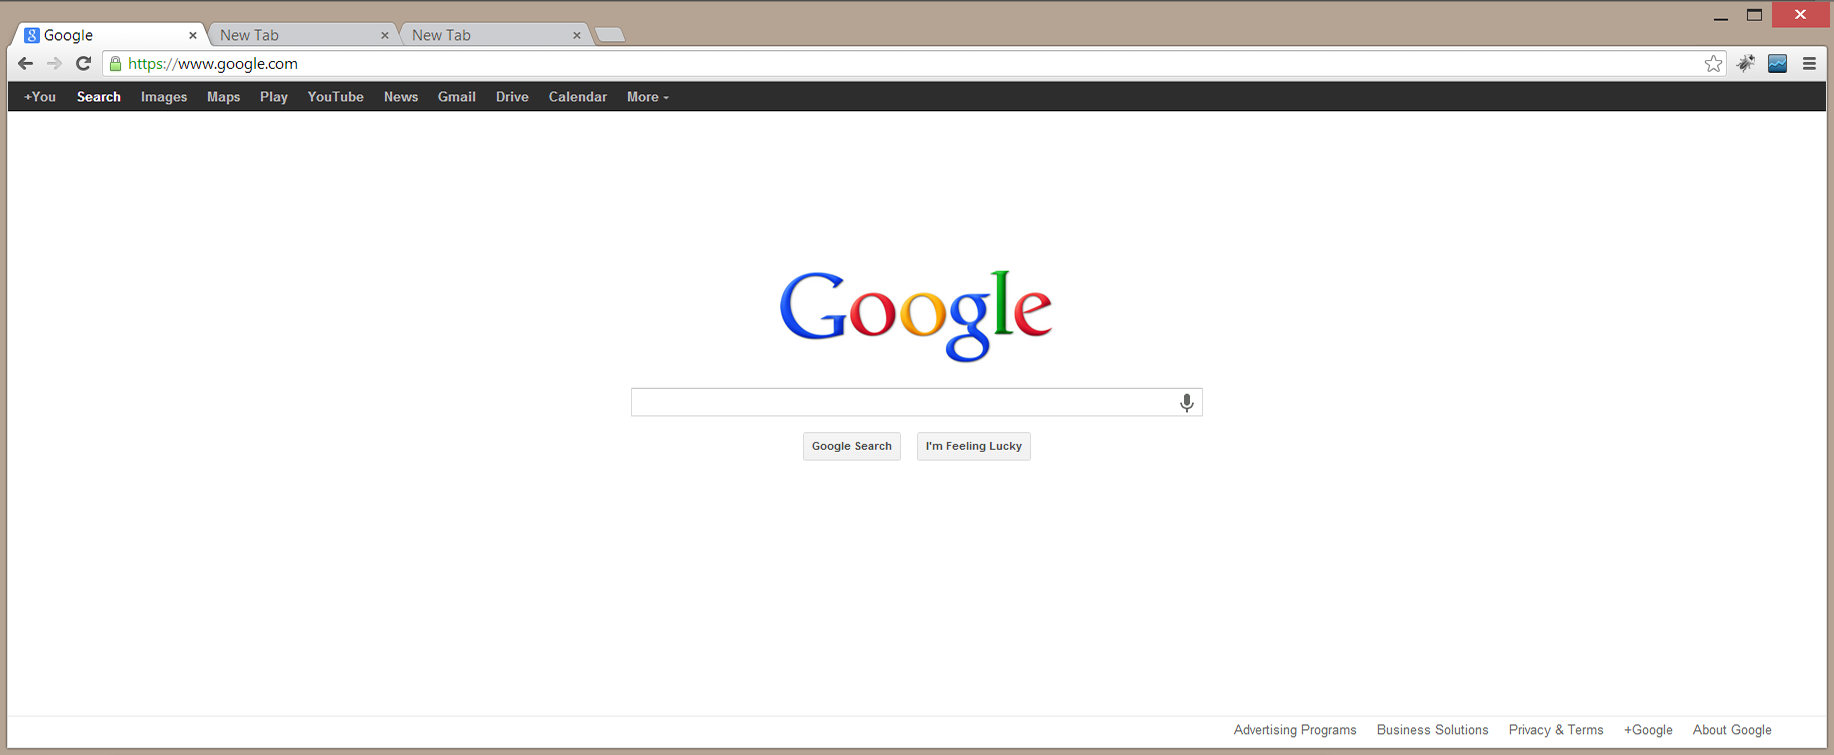 Google Chrome Browser For Desktop Free Download